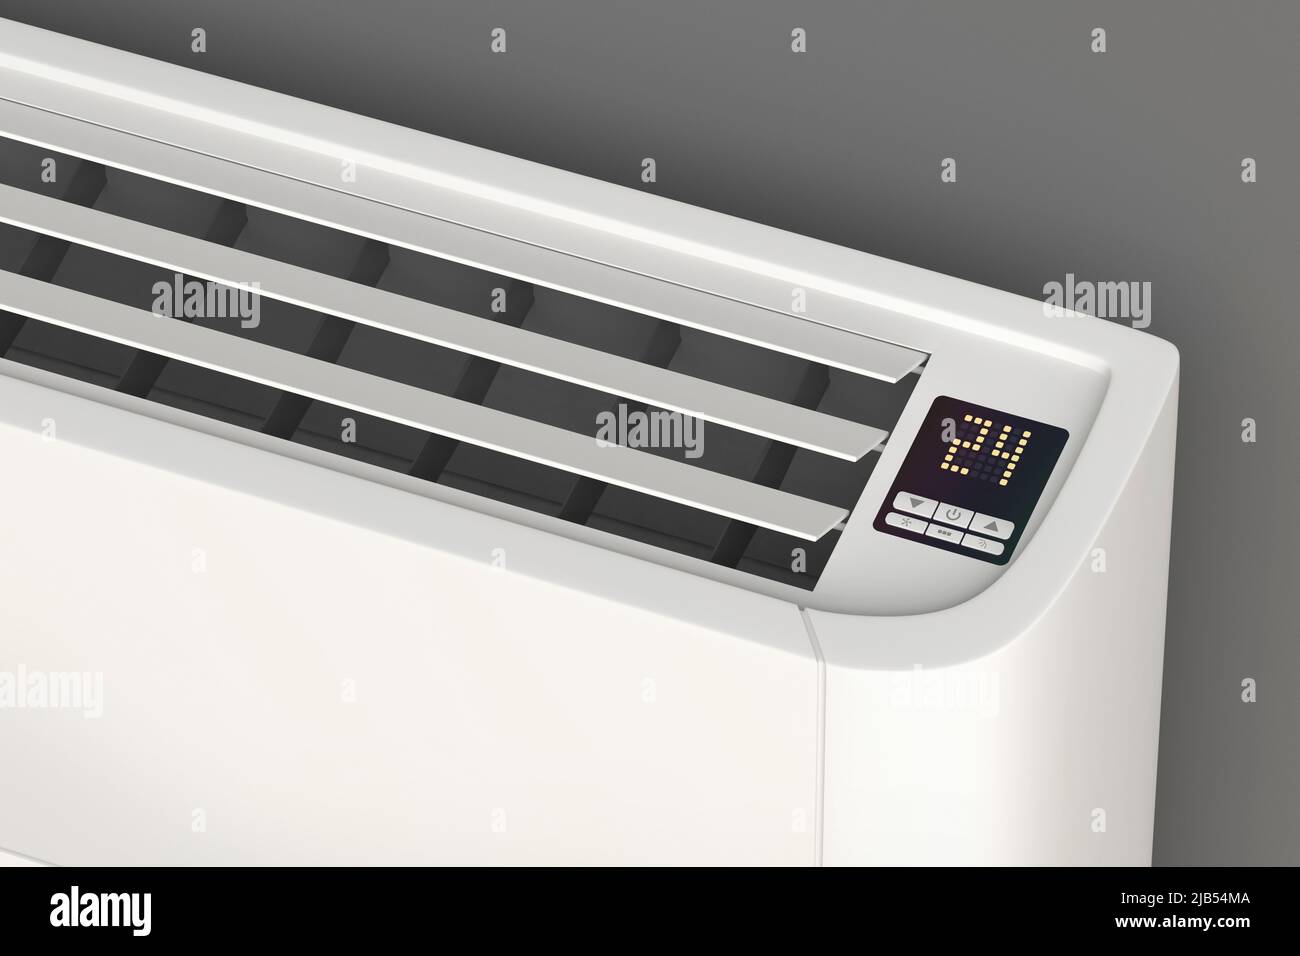 Detalles del panel de control del aire acondicionado montado en el suelo  Fotografía de stock - Alamy